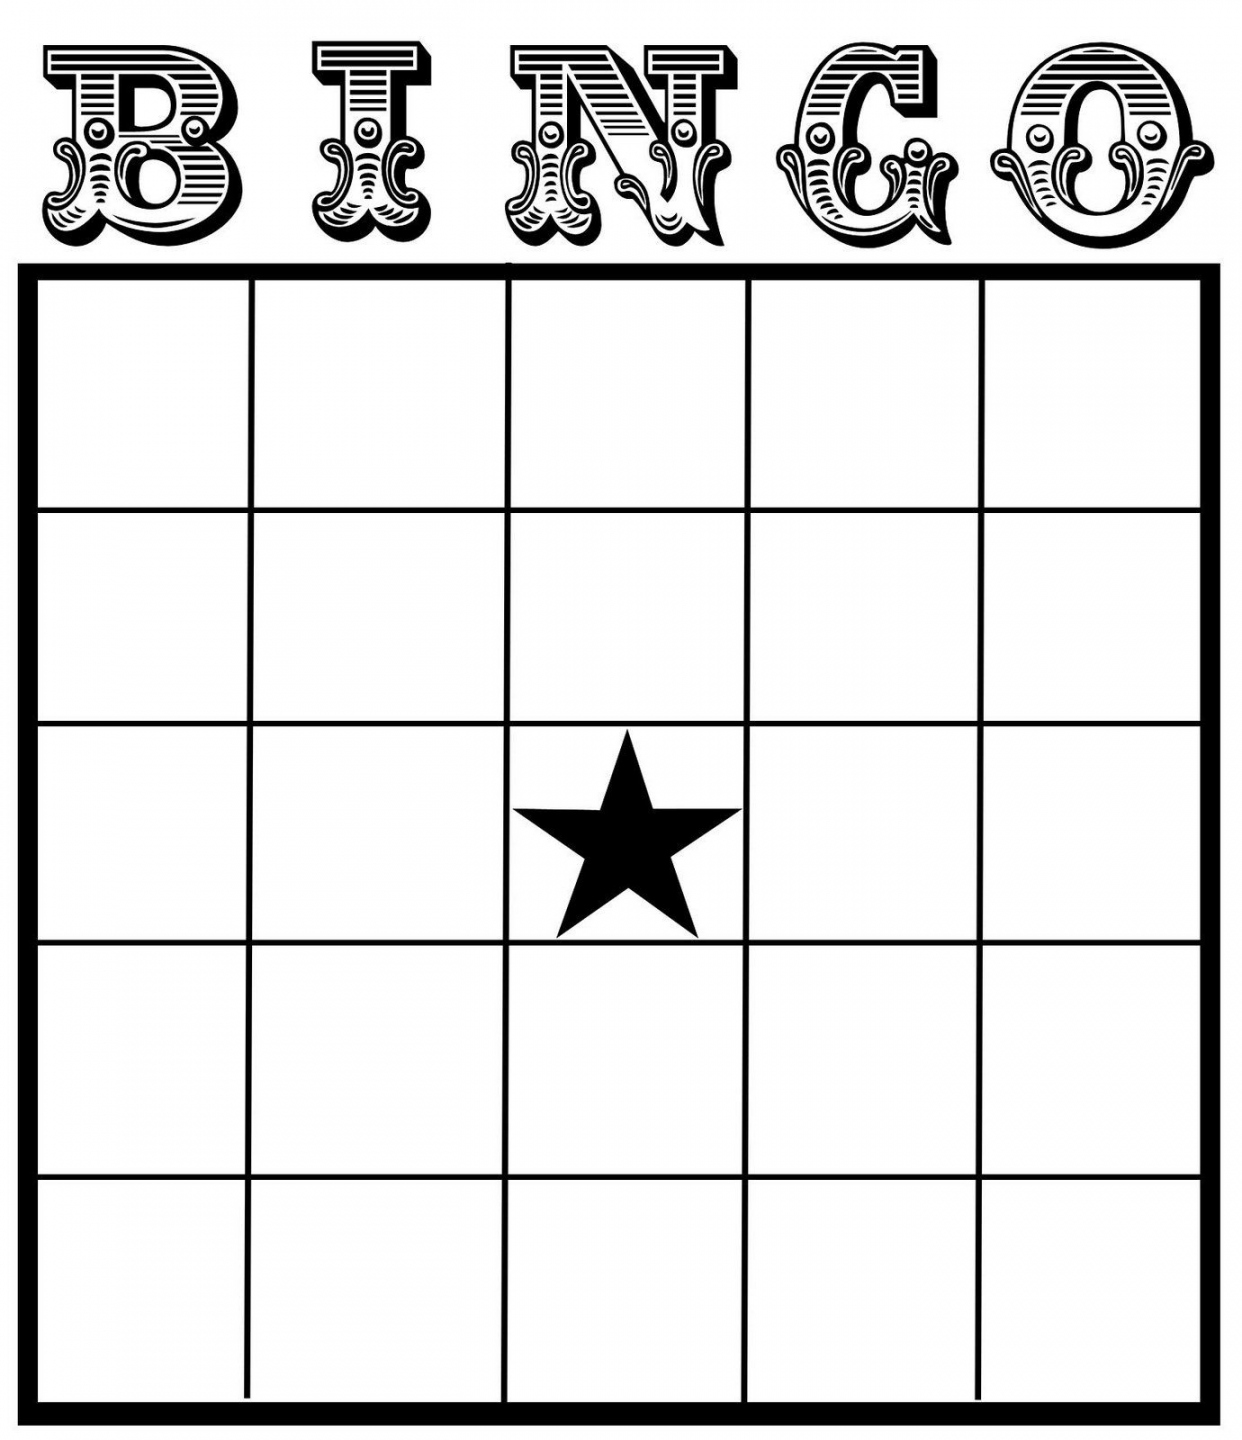 Printable Blank Bingo Cards Template  Bingo card template, Bingo  - FREE Printables - Free Printable Bingo Cards Blank